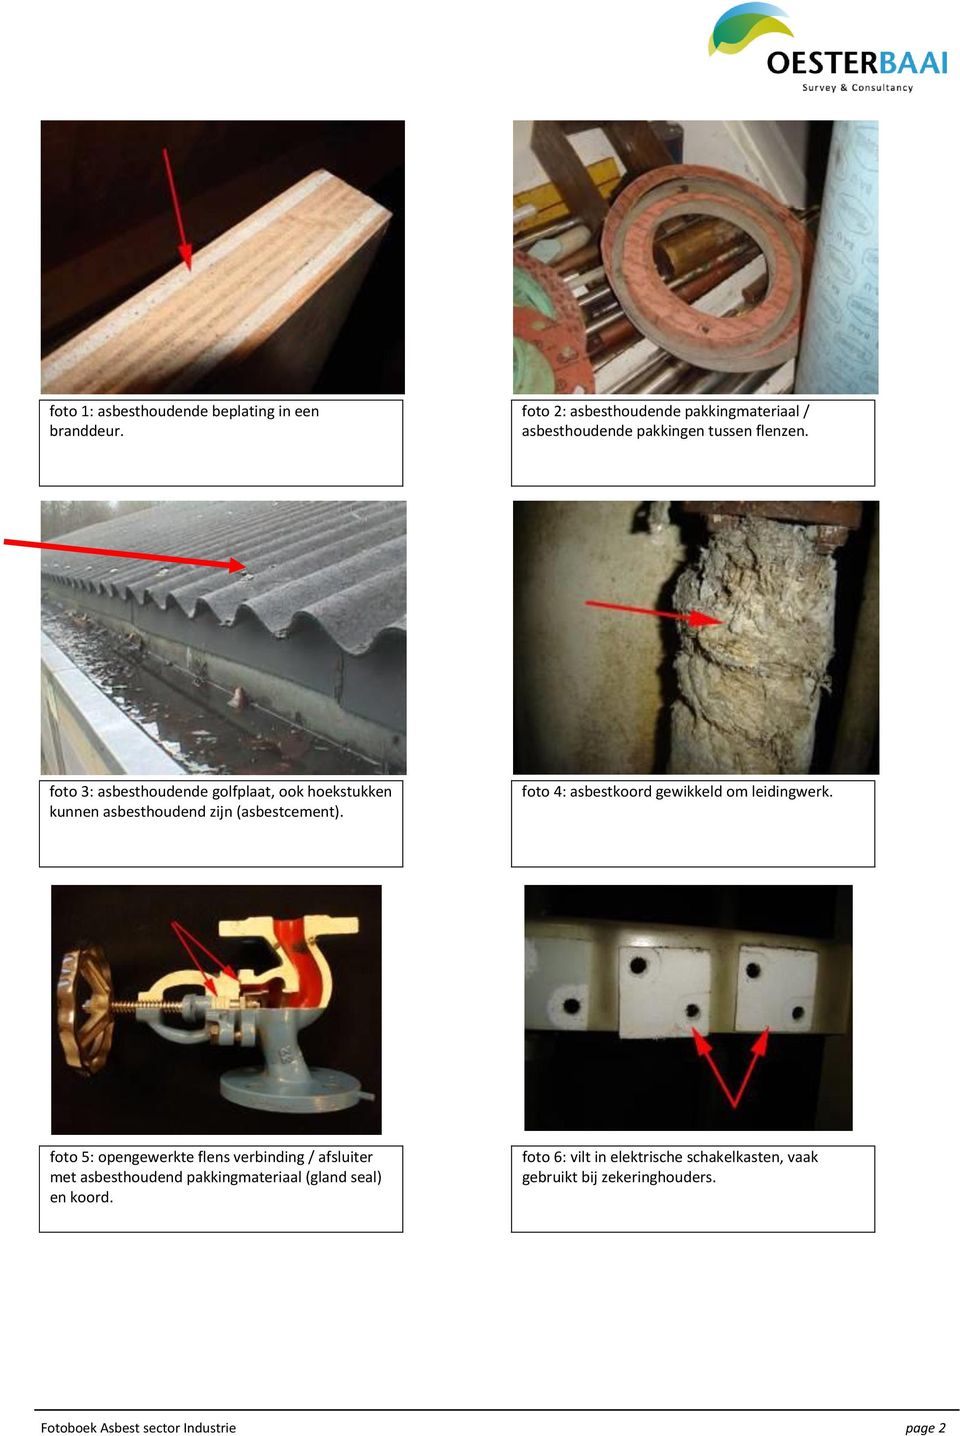 foto 3: asbesthoudende golfplaat, ook hoekstukken kunnen asbesthoudend zijn (asbestcement).